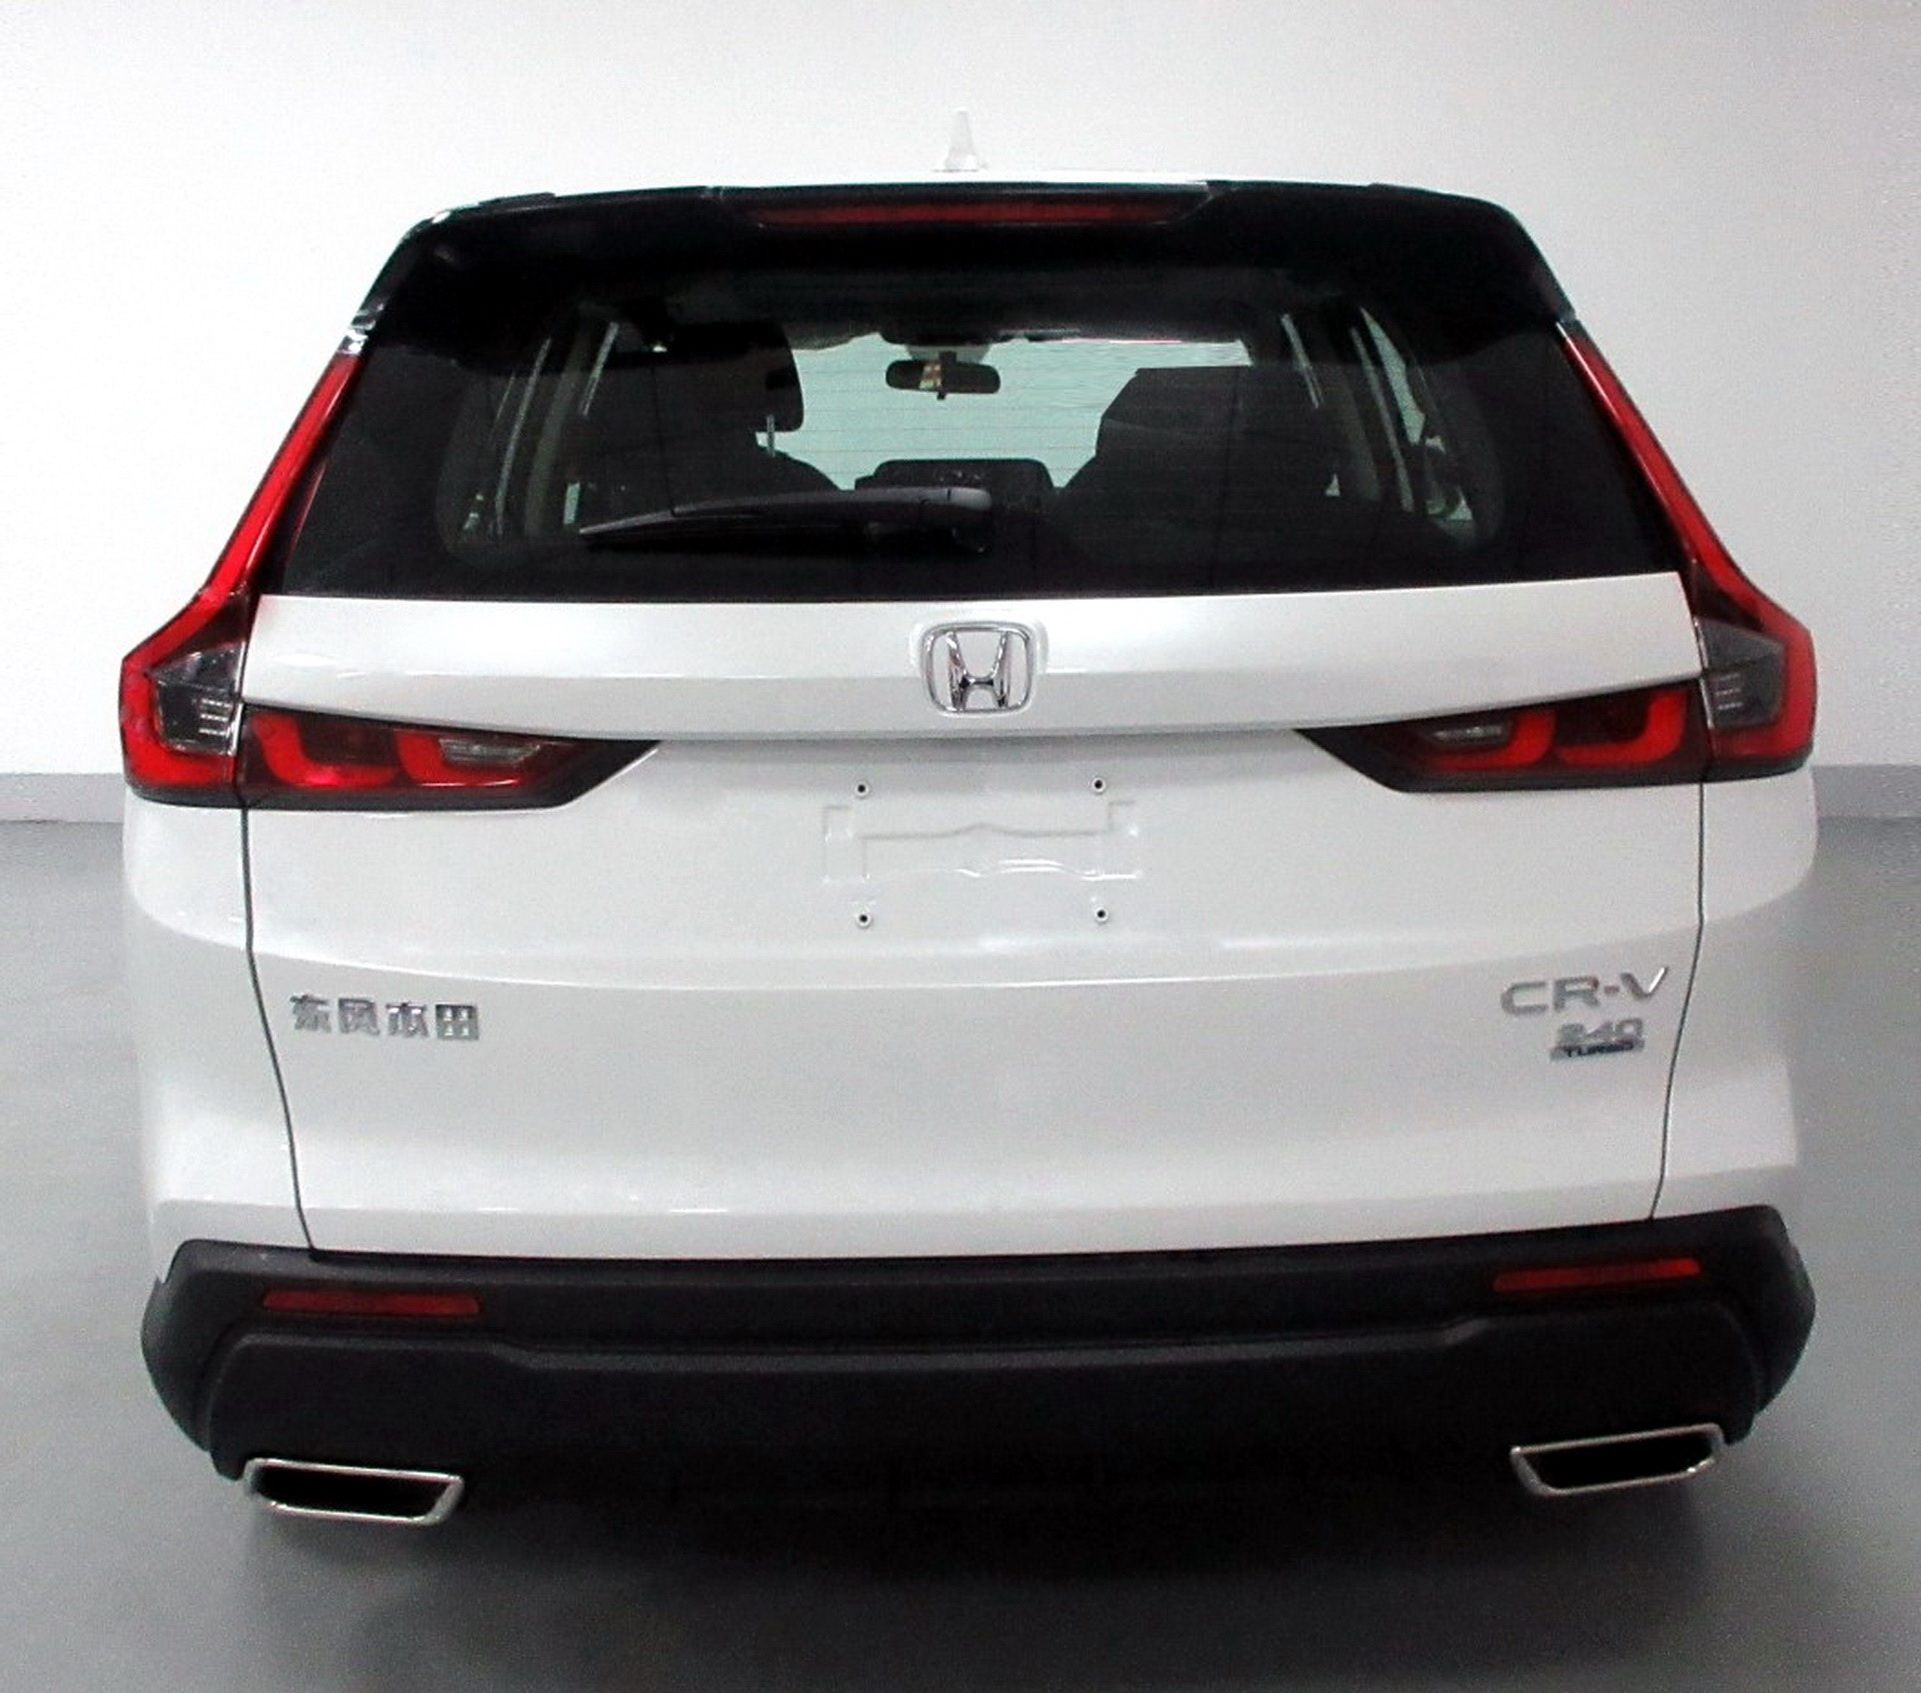 Honda CR-V thế hệ mới lộ thiết kế ở Trung Quốc - 2